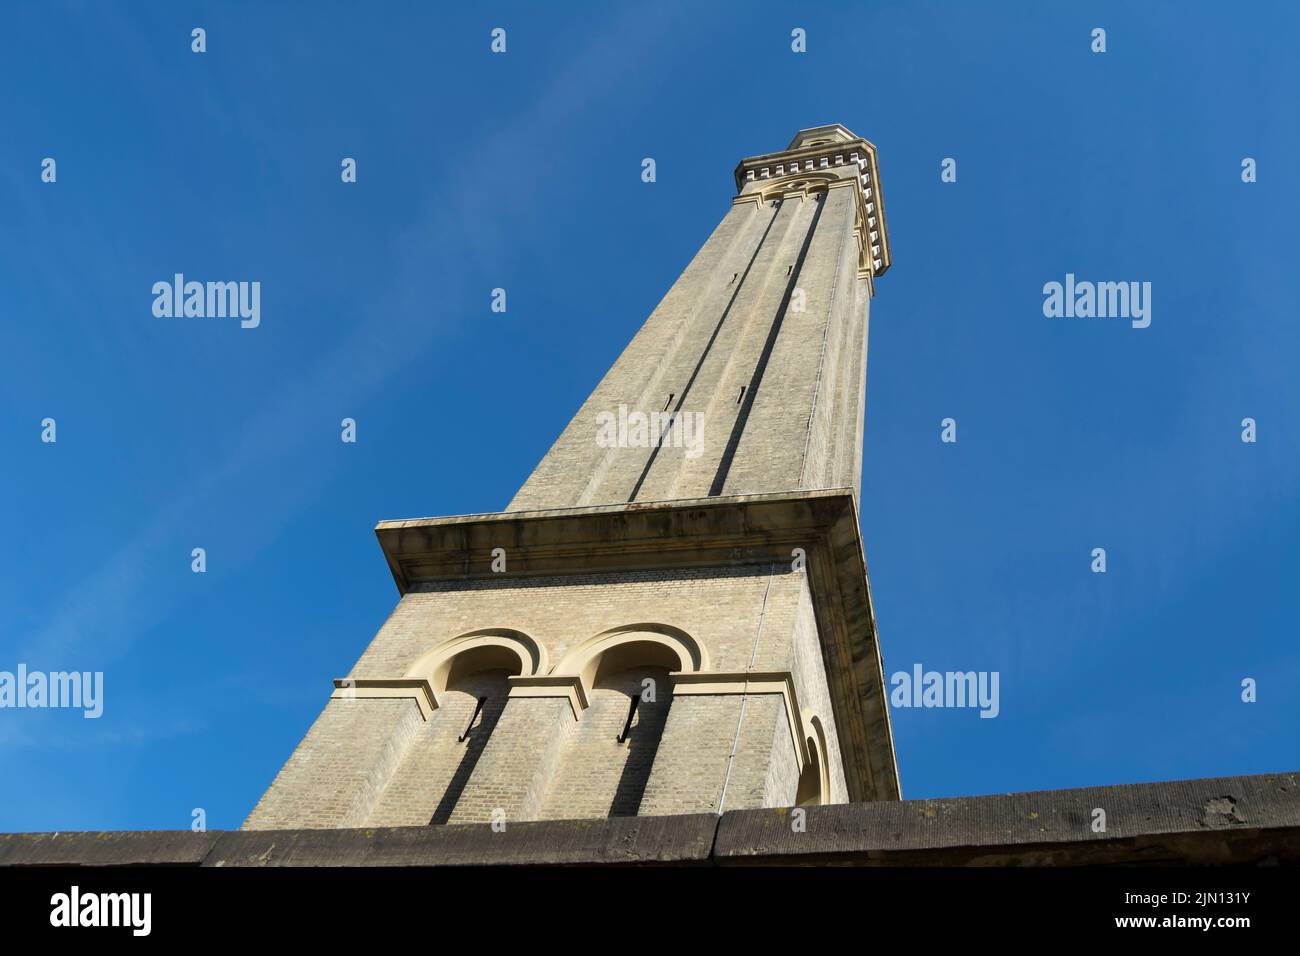 Der 60 Meter hohe Wasserdruckturm aus dem 19.. Jahrhundert, der heute Teil des londoner Museums für Wasser und Dampf, brentford, london, england, ist Stockfoto